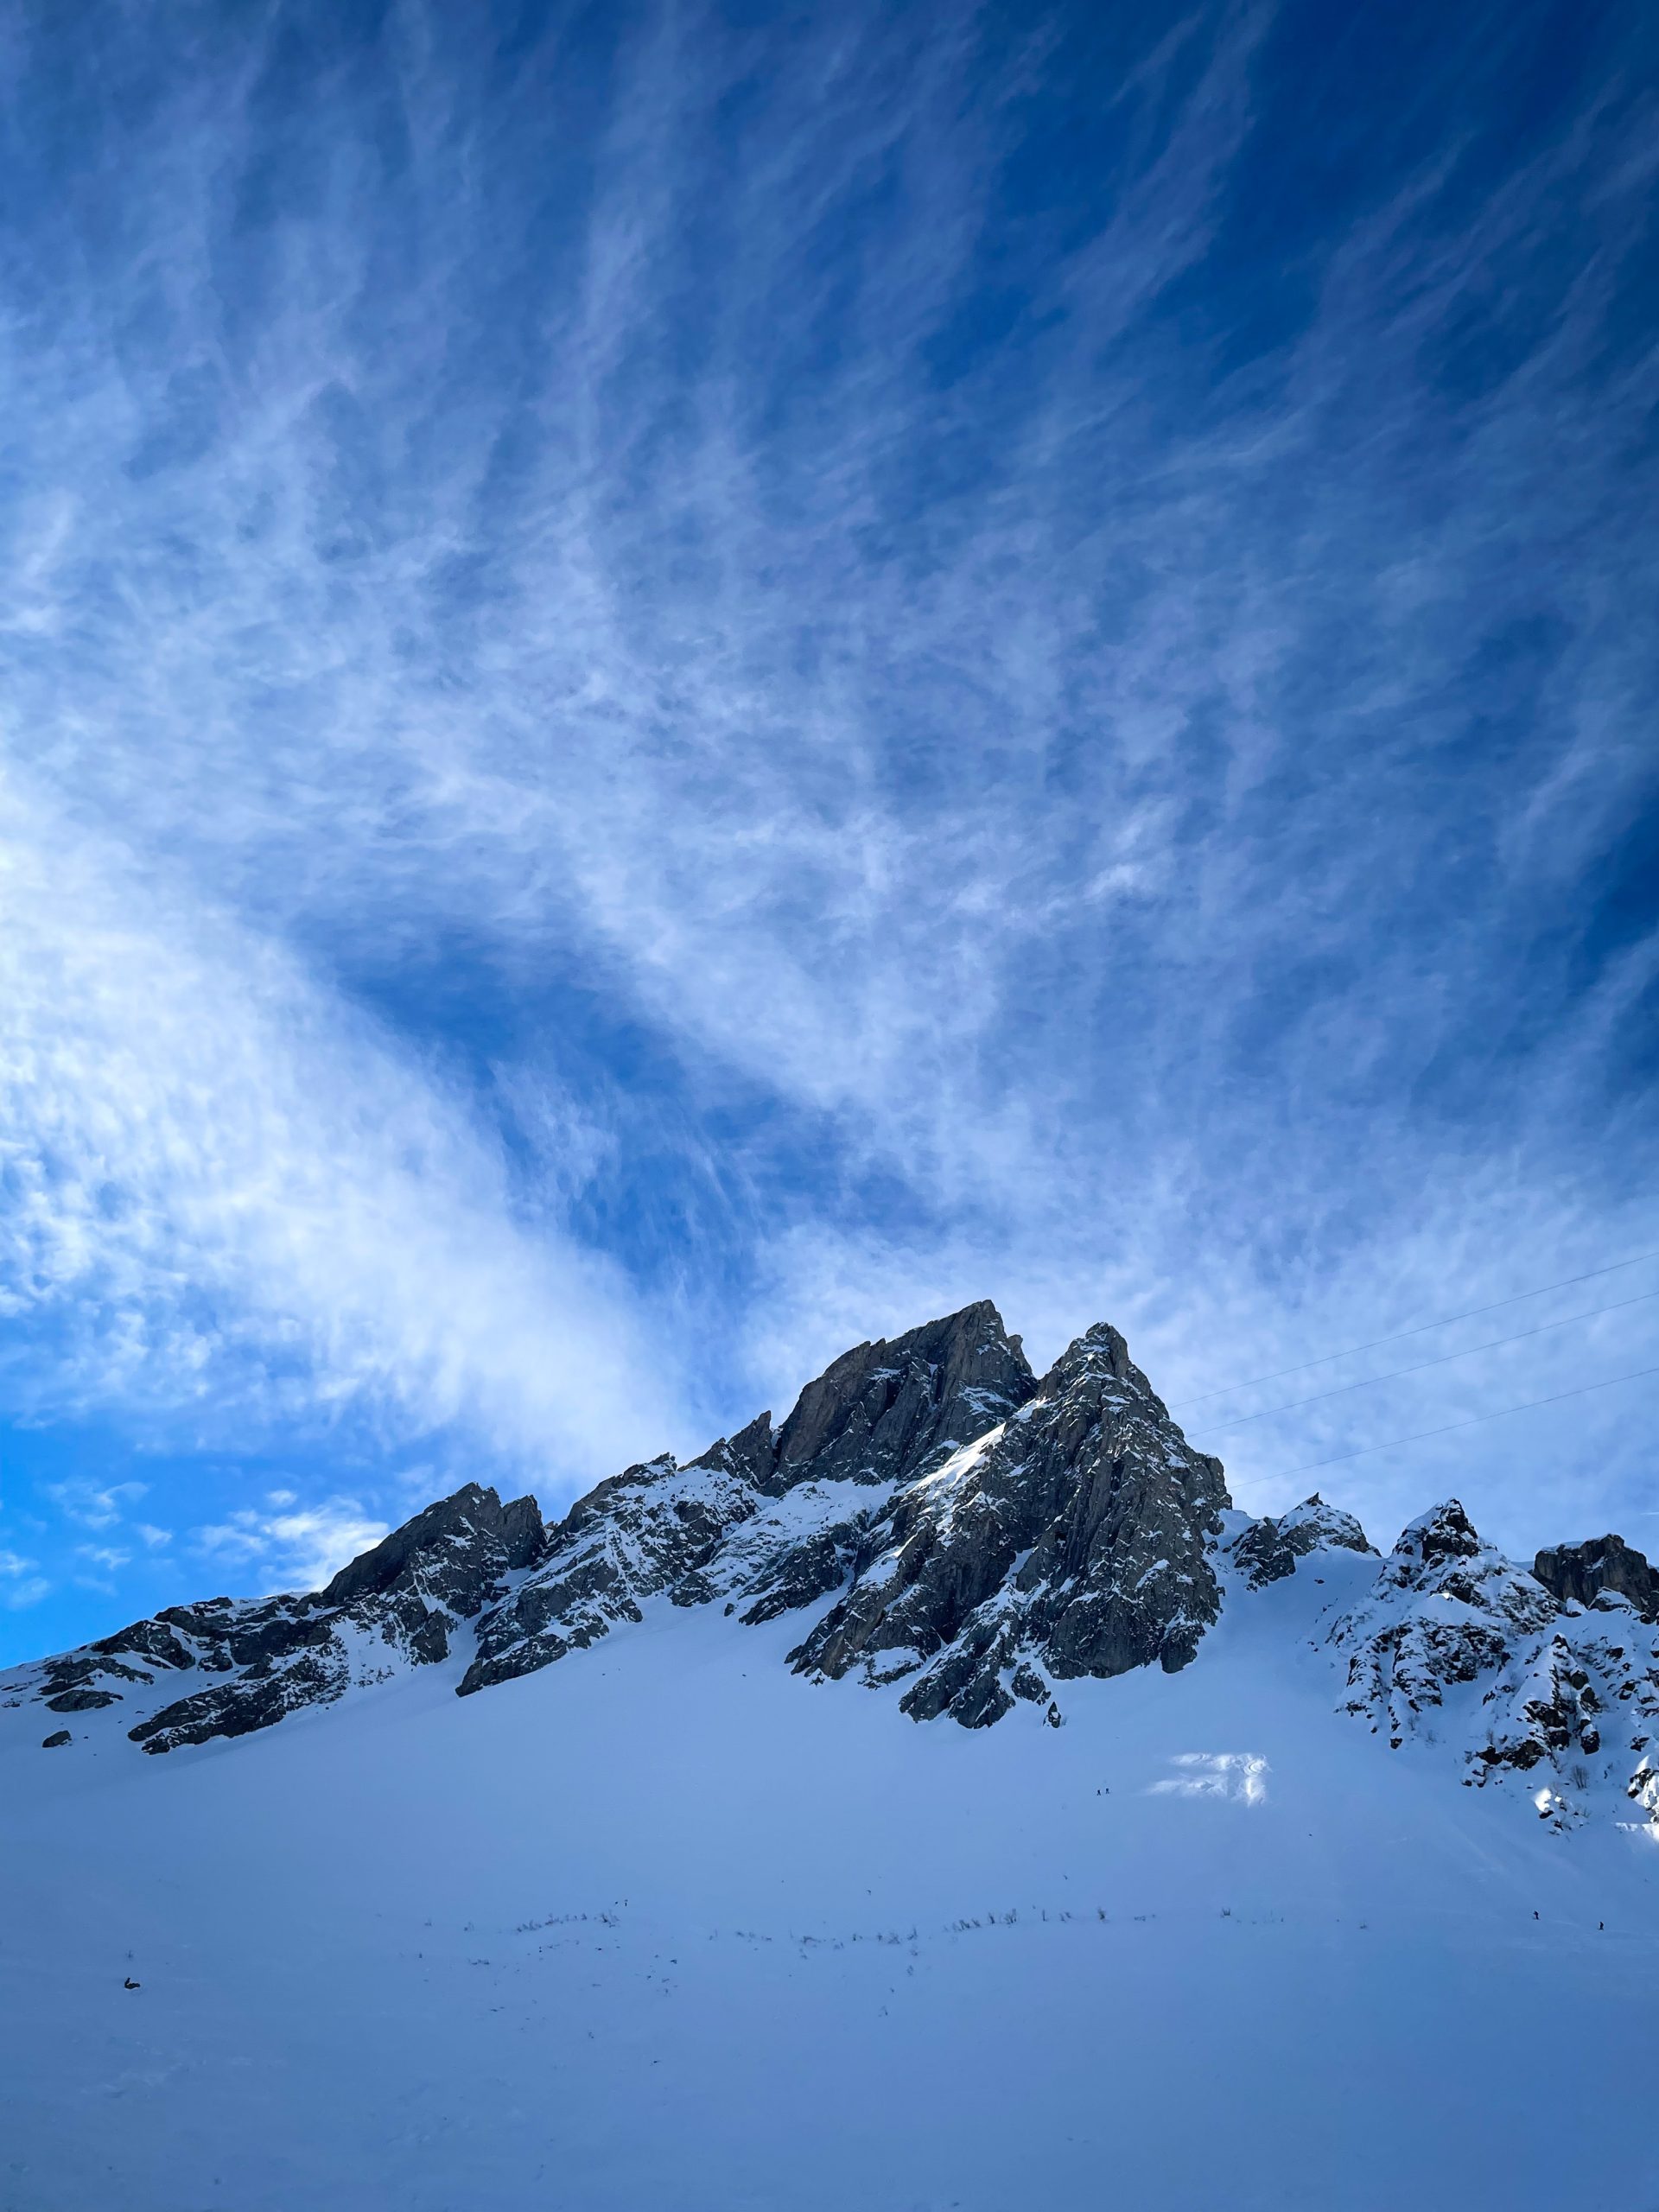 Beaufortain ski de randonnée splitboard couloir pente raide nord aiguilles Pennaz Contamines Val Monjoie